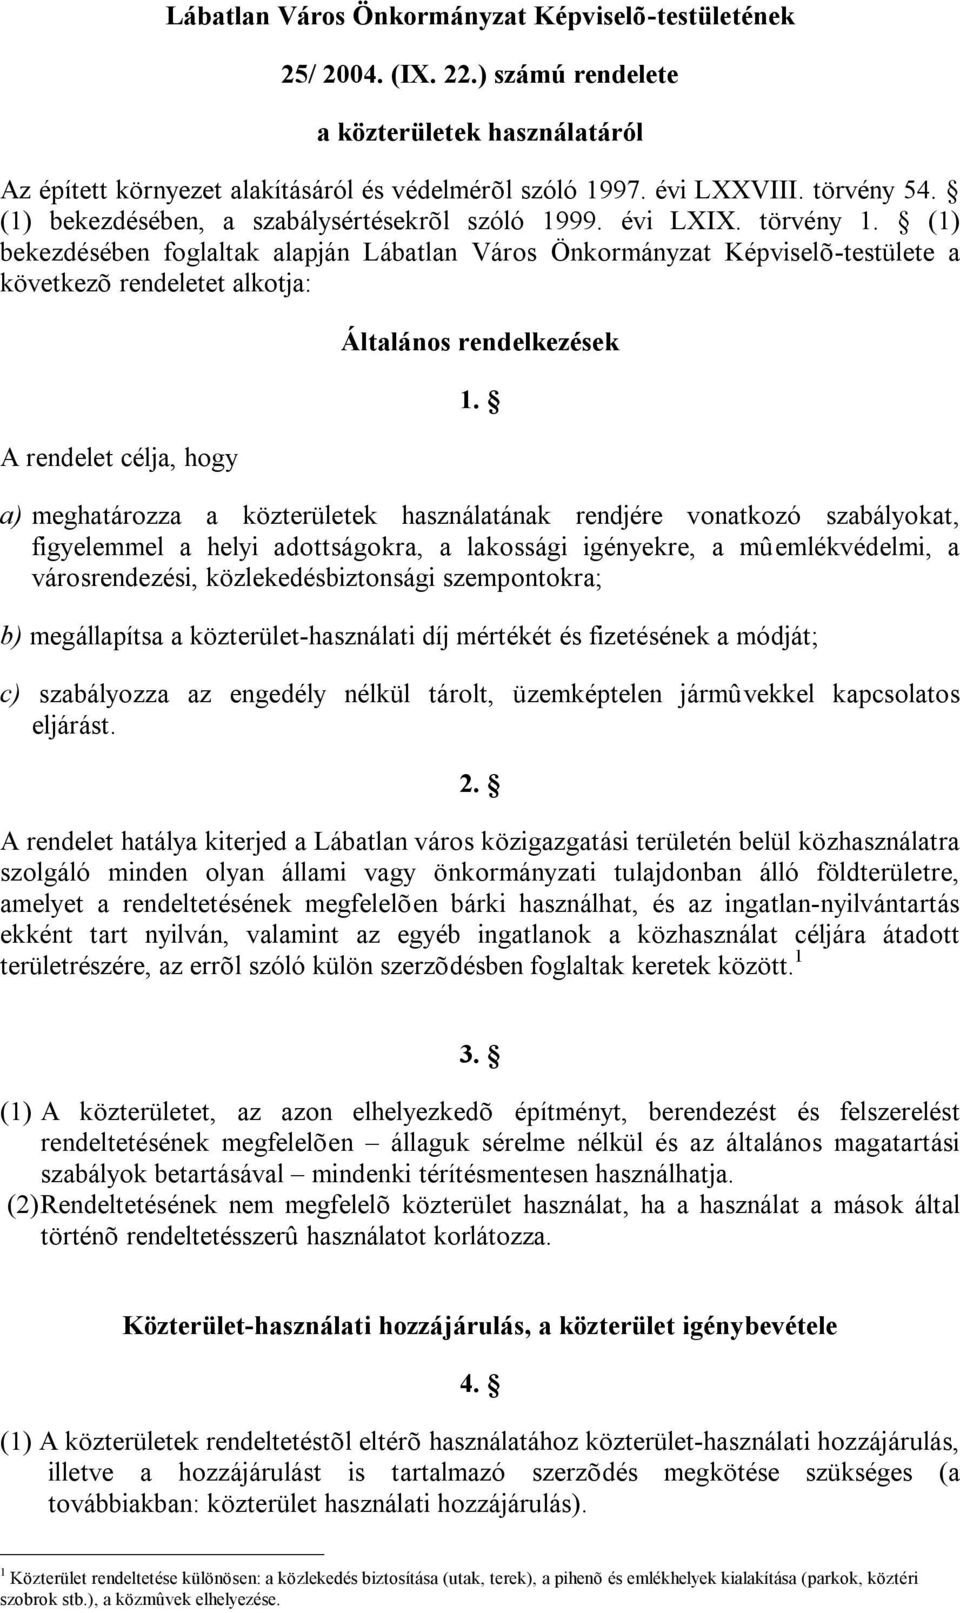 (1) bekezdésében foglaltak alapján Lábatlan Város Önkormányzat Képviselõ-testülete a következõ rendeletet alkotja: A rendelet célja, hogy Általános rendelkezések 1.